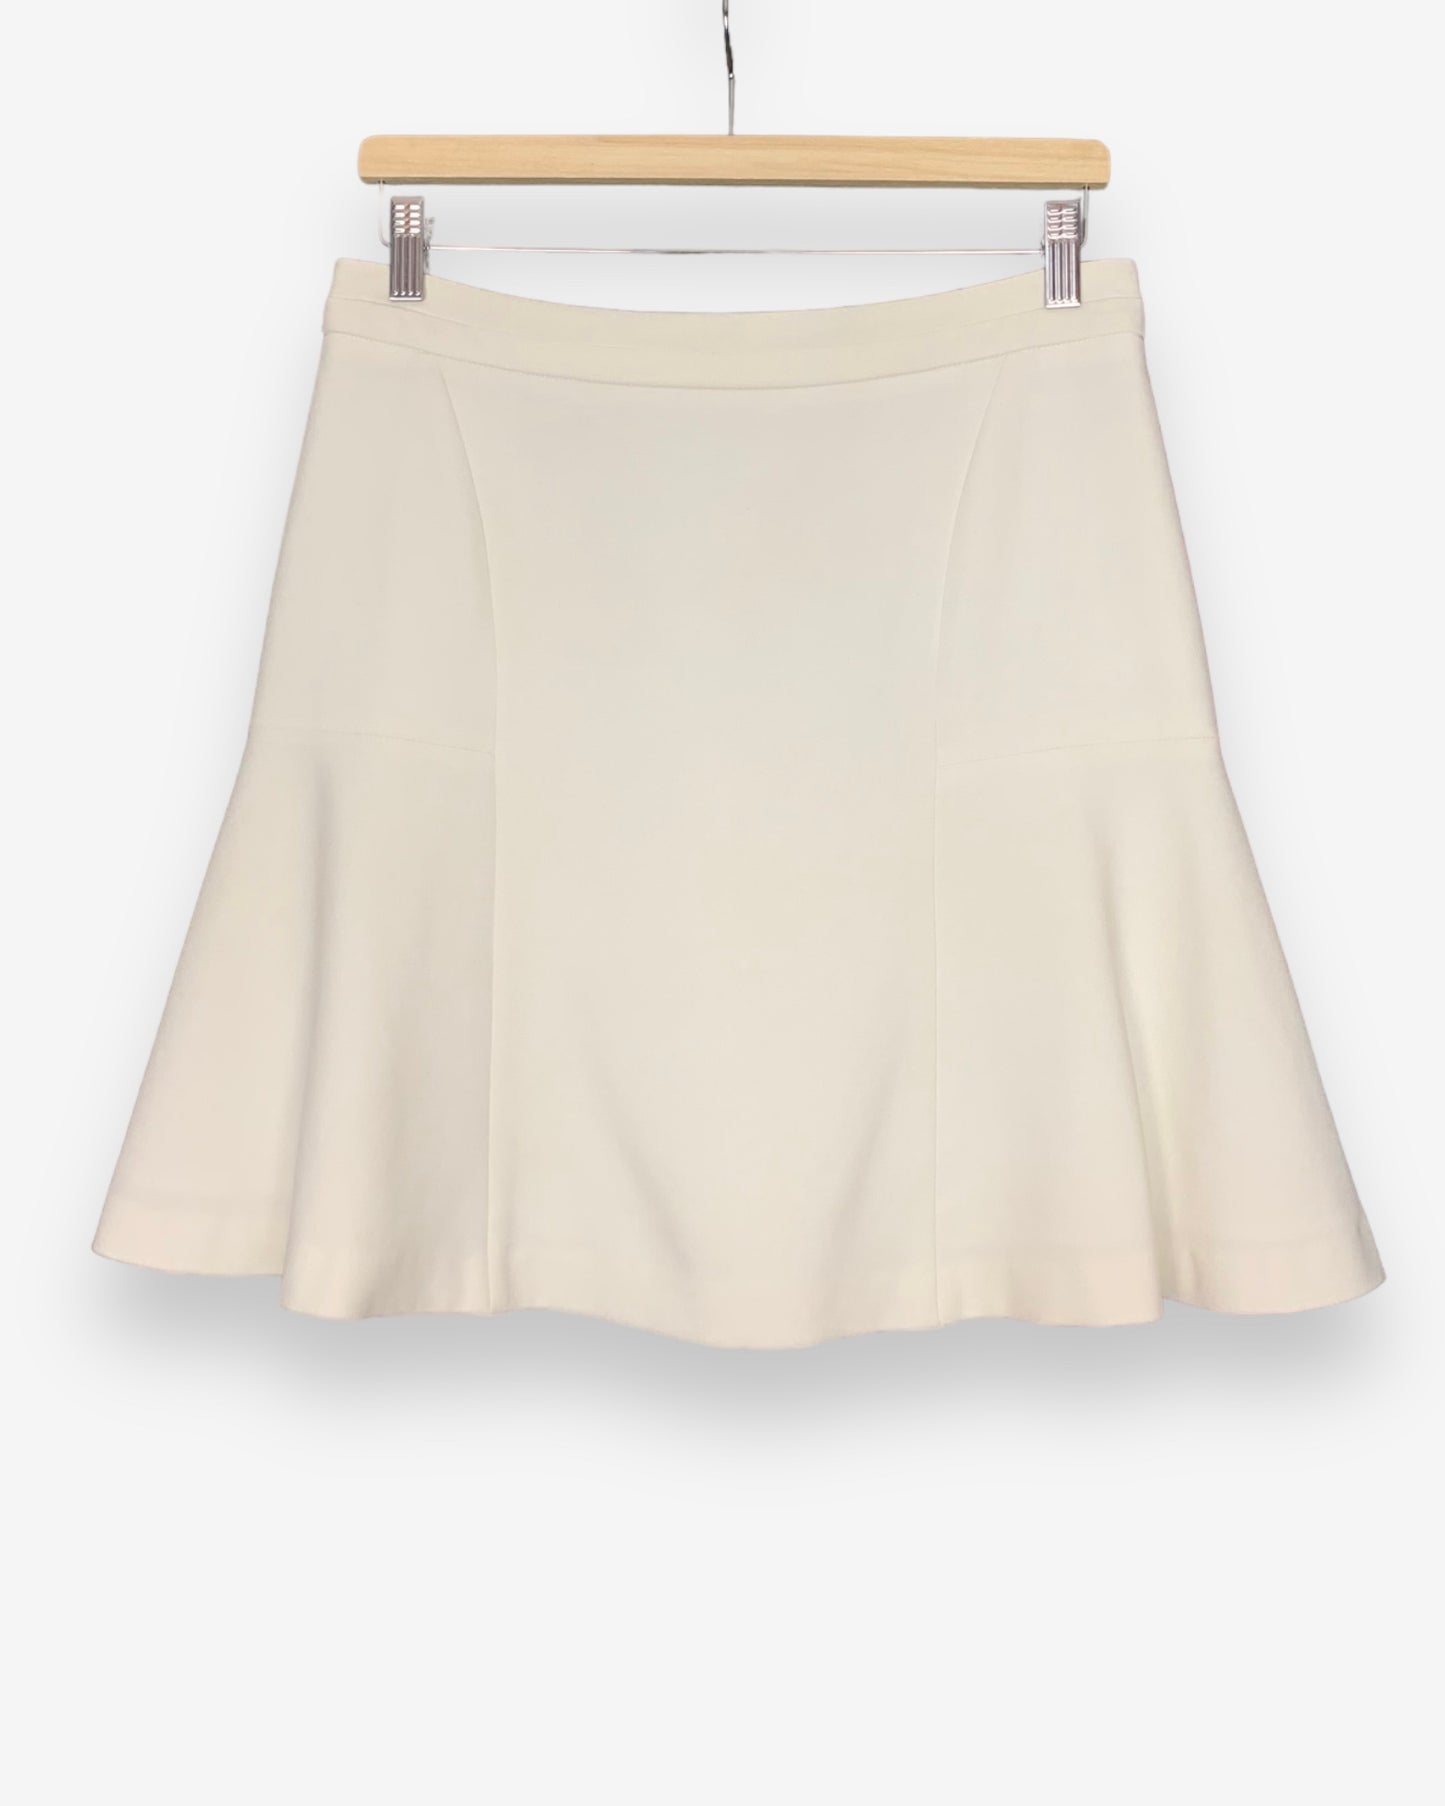 Sandro white skirt